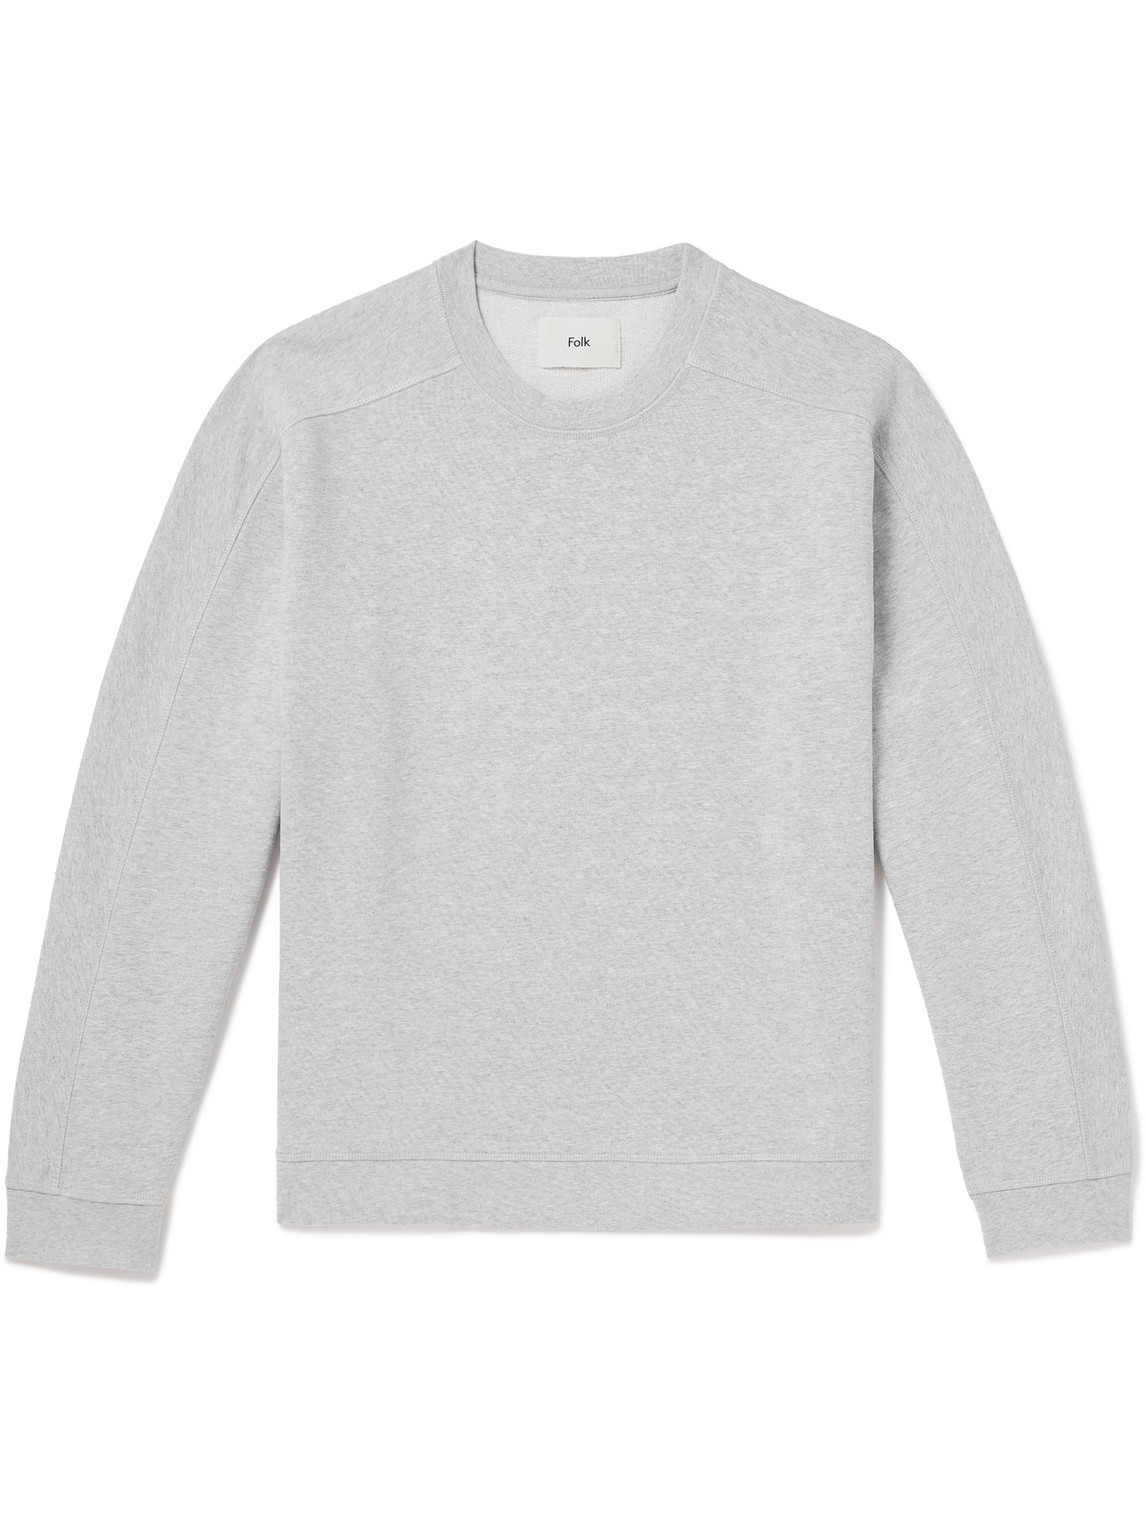 Folk - Prism Embroidered Cotton-Jersey Sweatshirt - Men - Gray - 5 von Folk